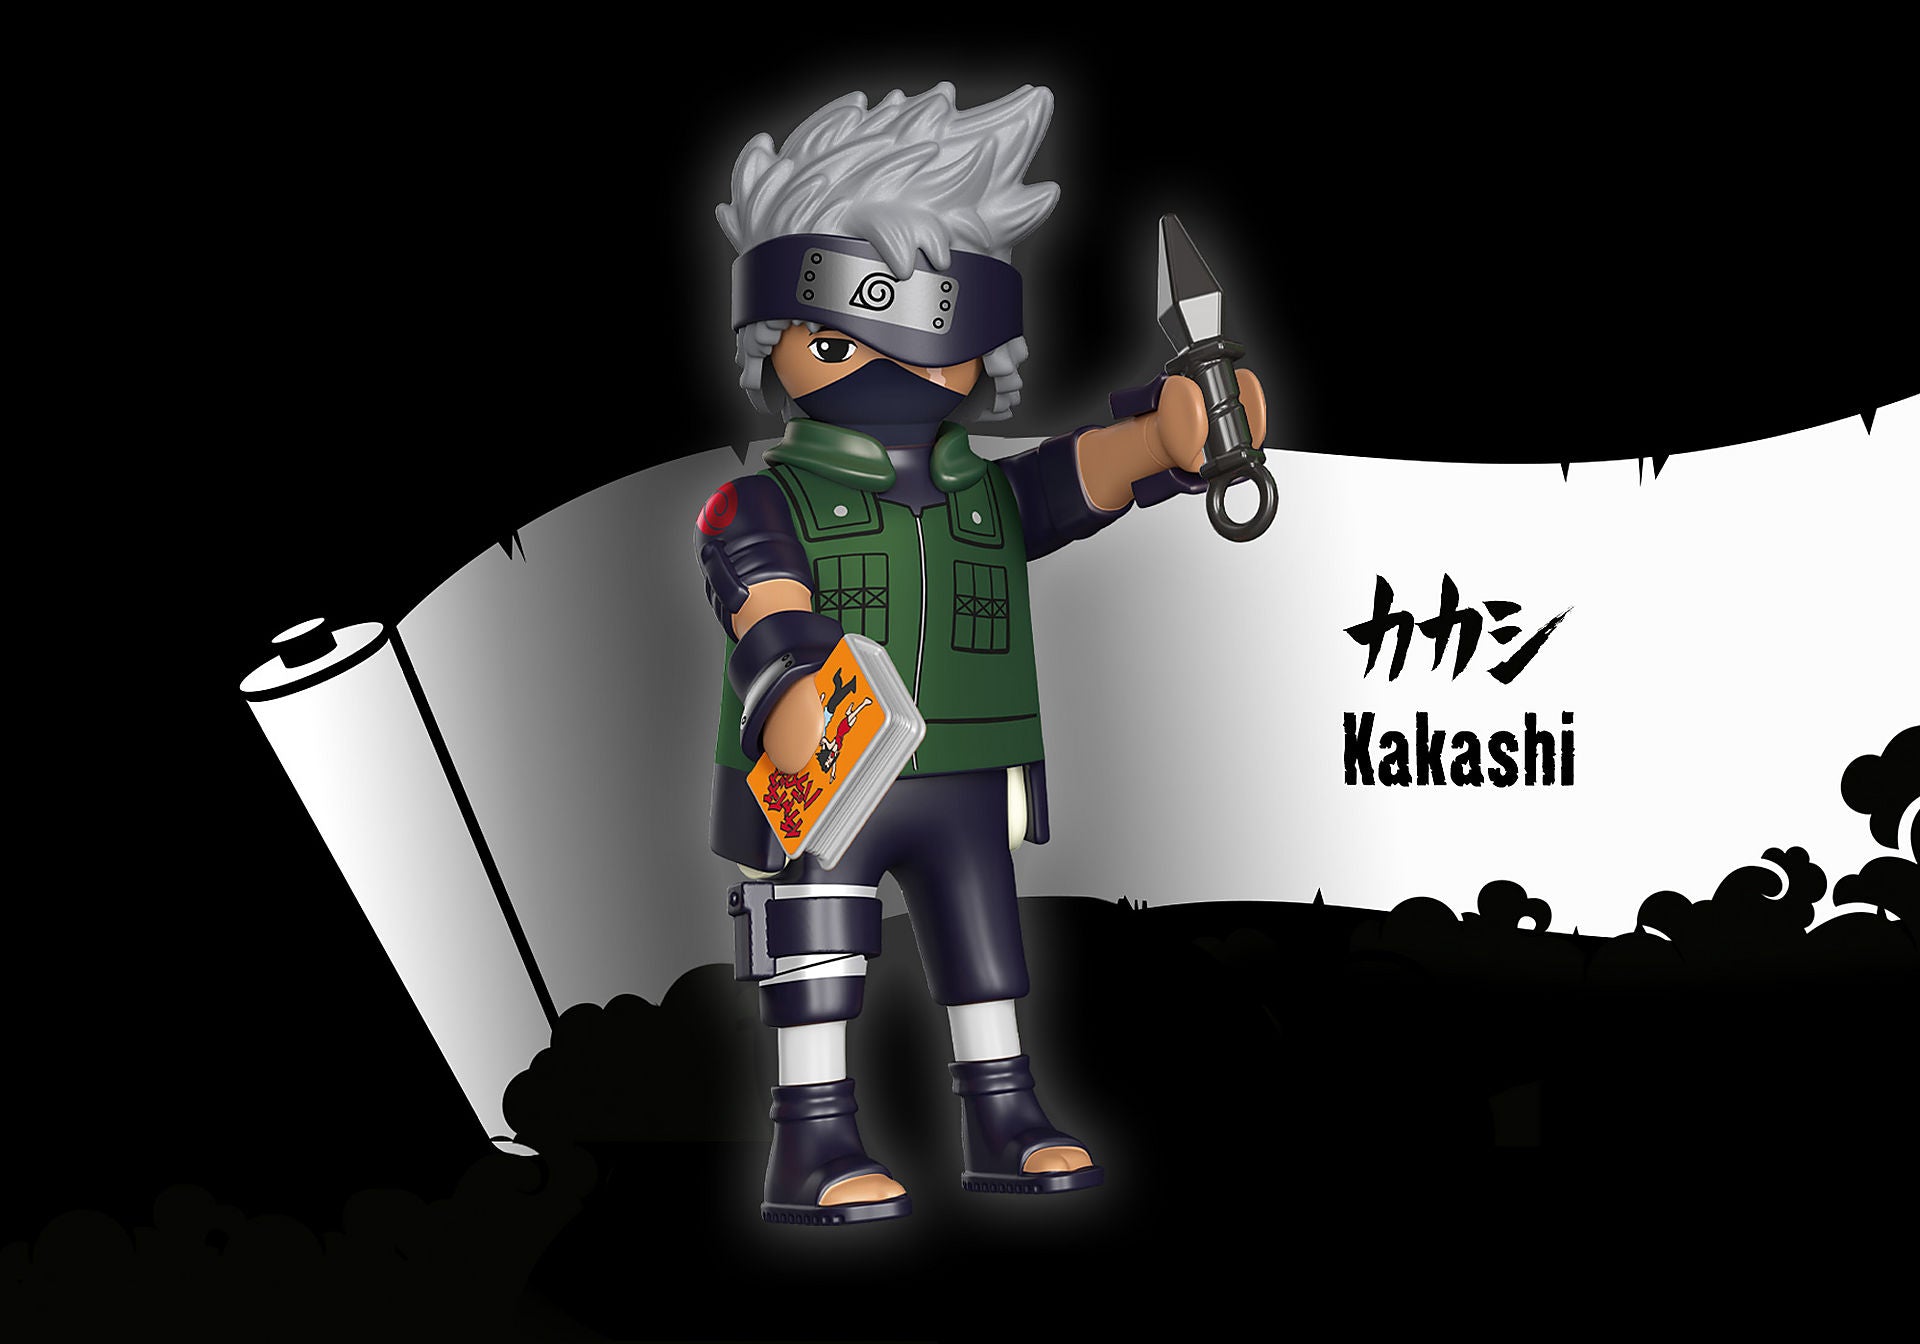 Playmobil Naruto Shippuden: Kakashi 71099